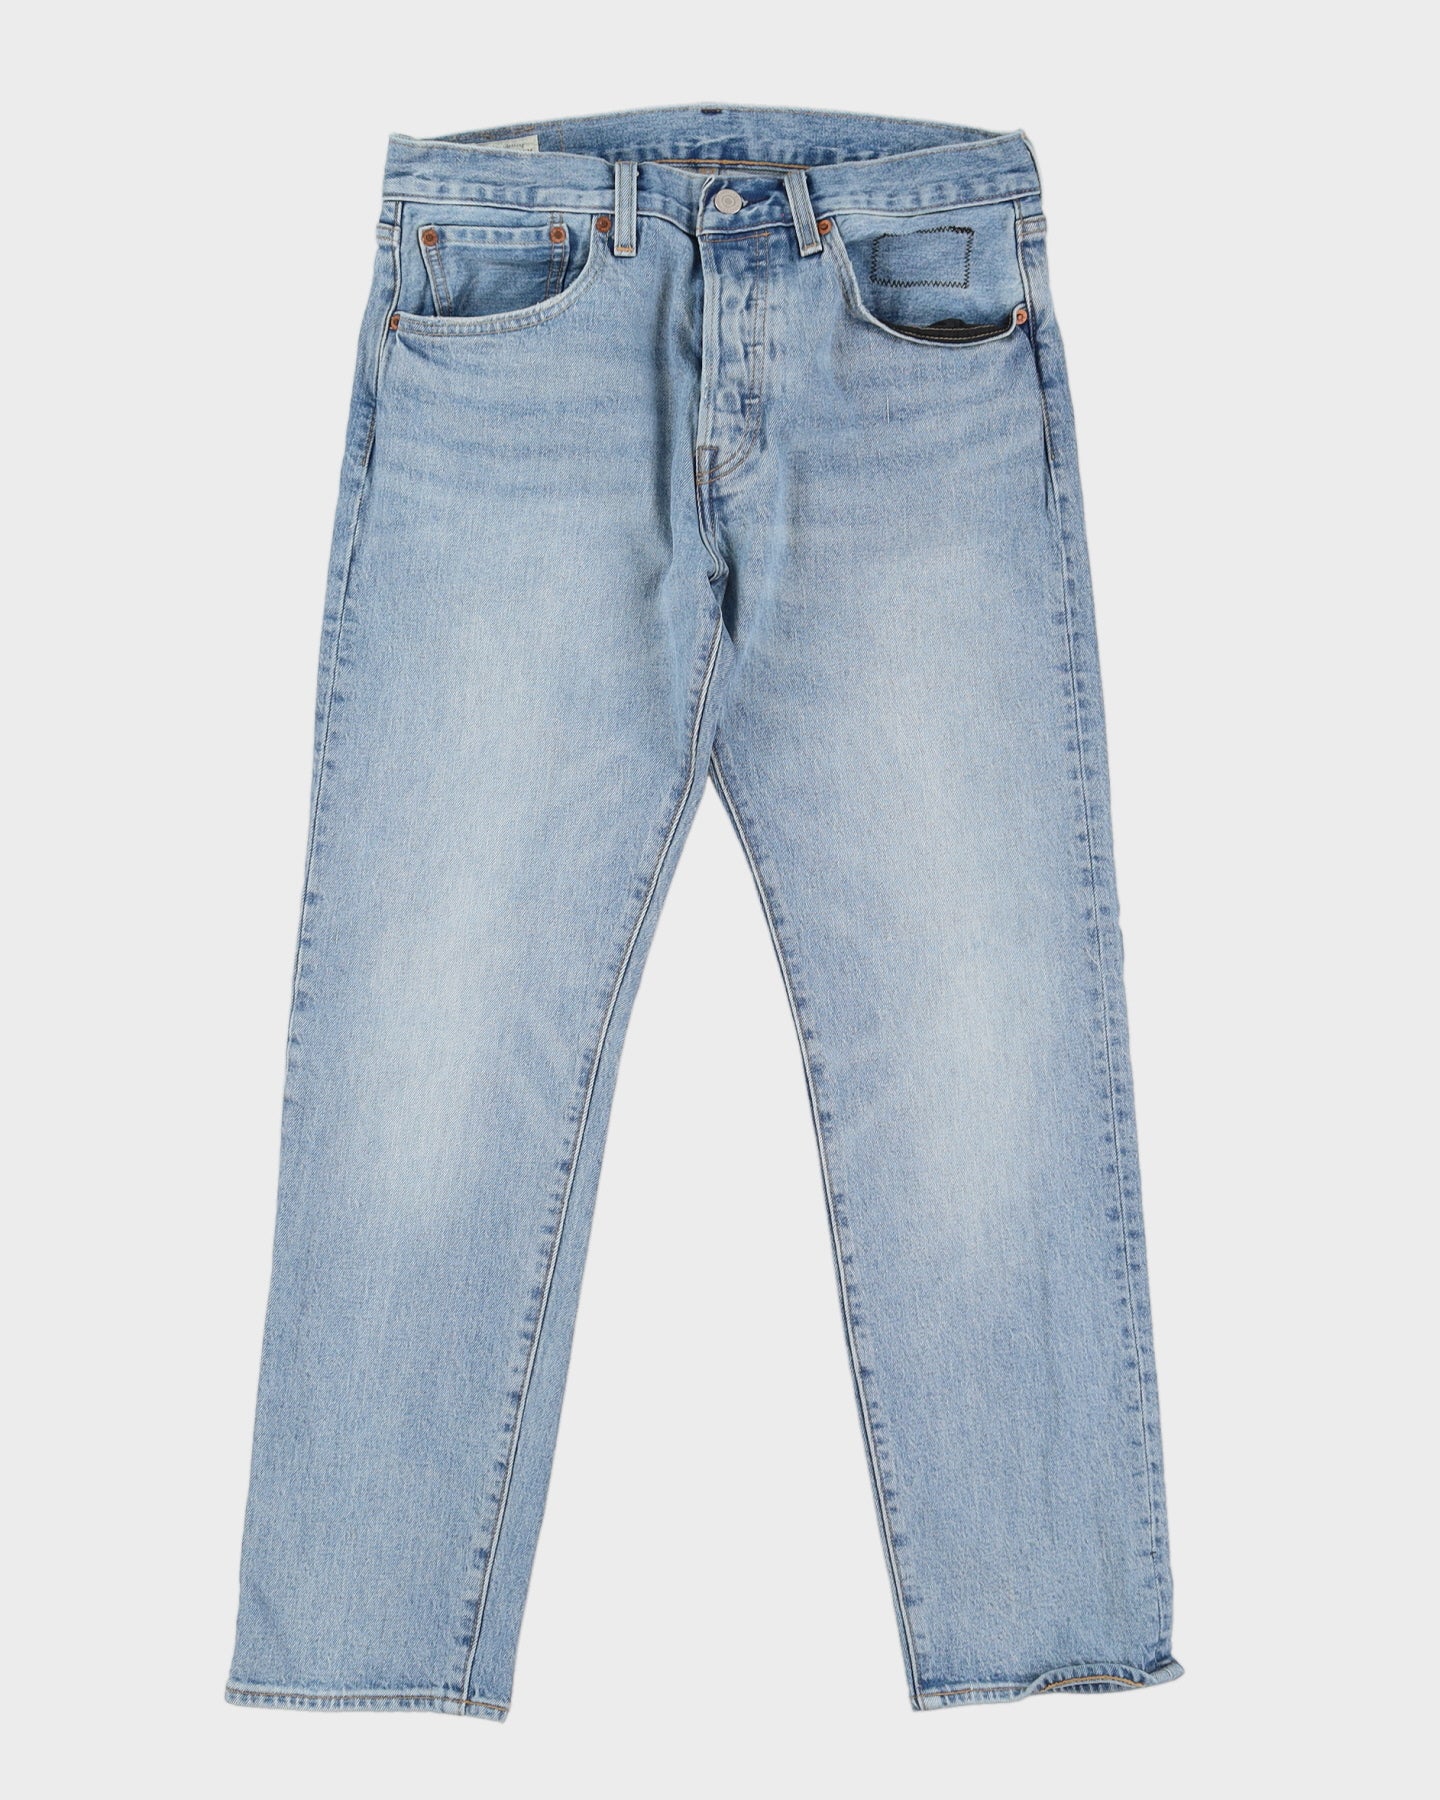 Levi's 501 Blue Jeans - W32 L28